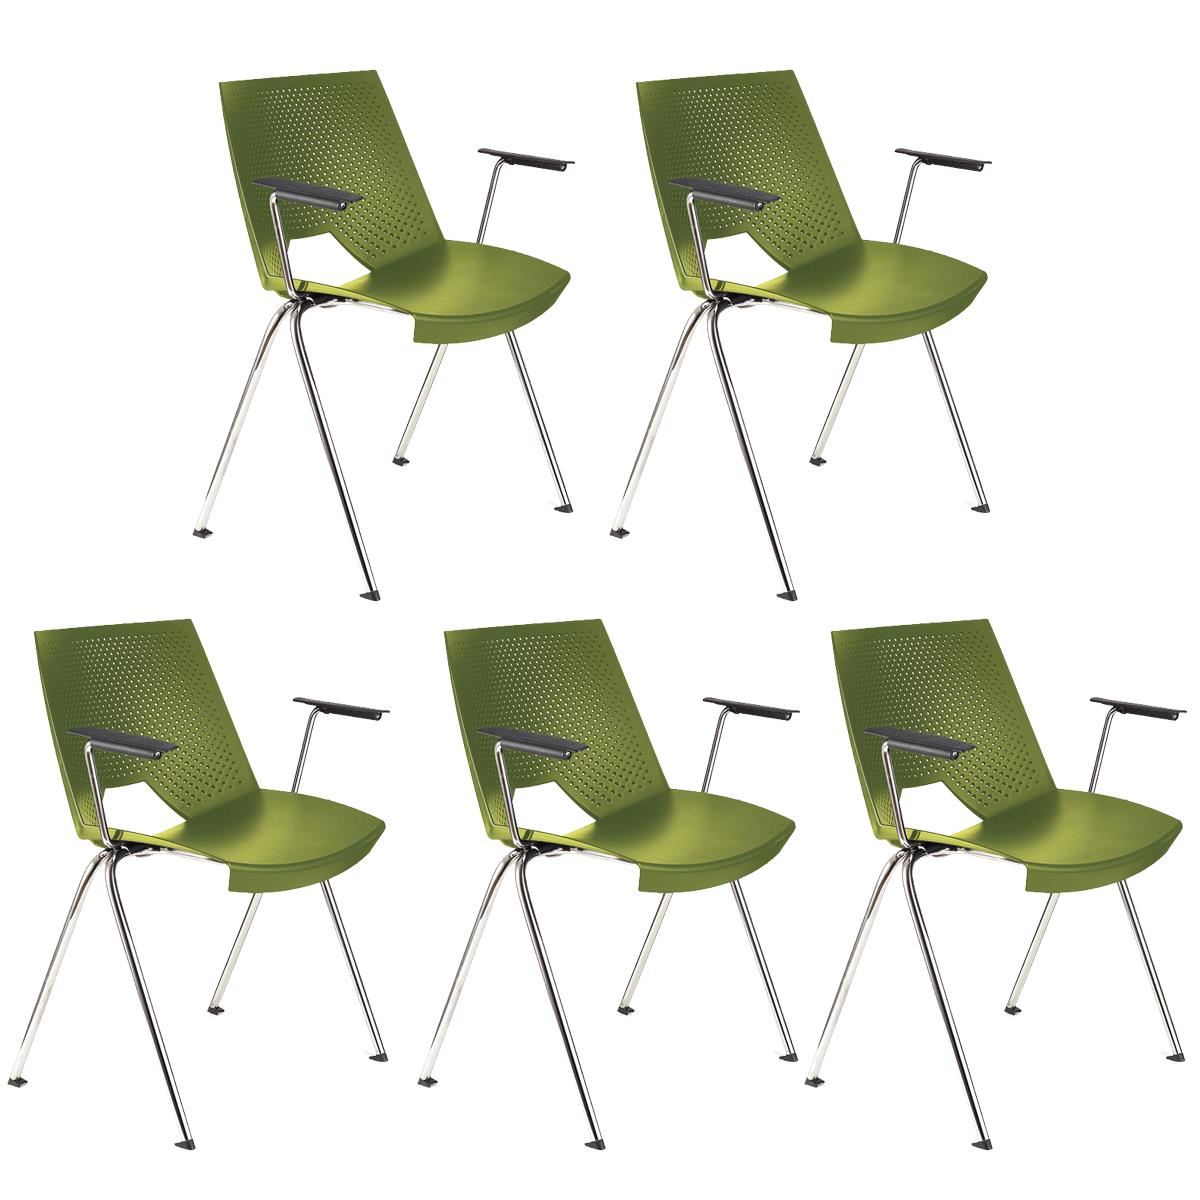 Lote de 5 sillas de Confidente ENZO CON BRAZOS, Cómodas y Prácticas, Apilables, Color Verde